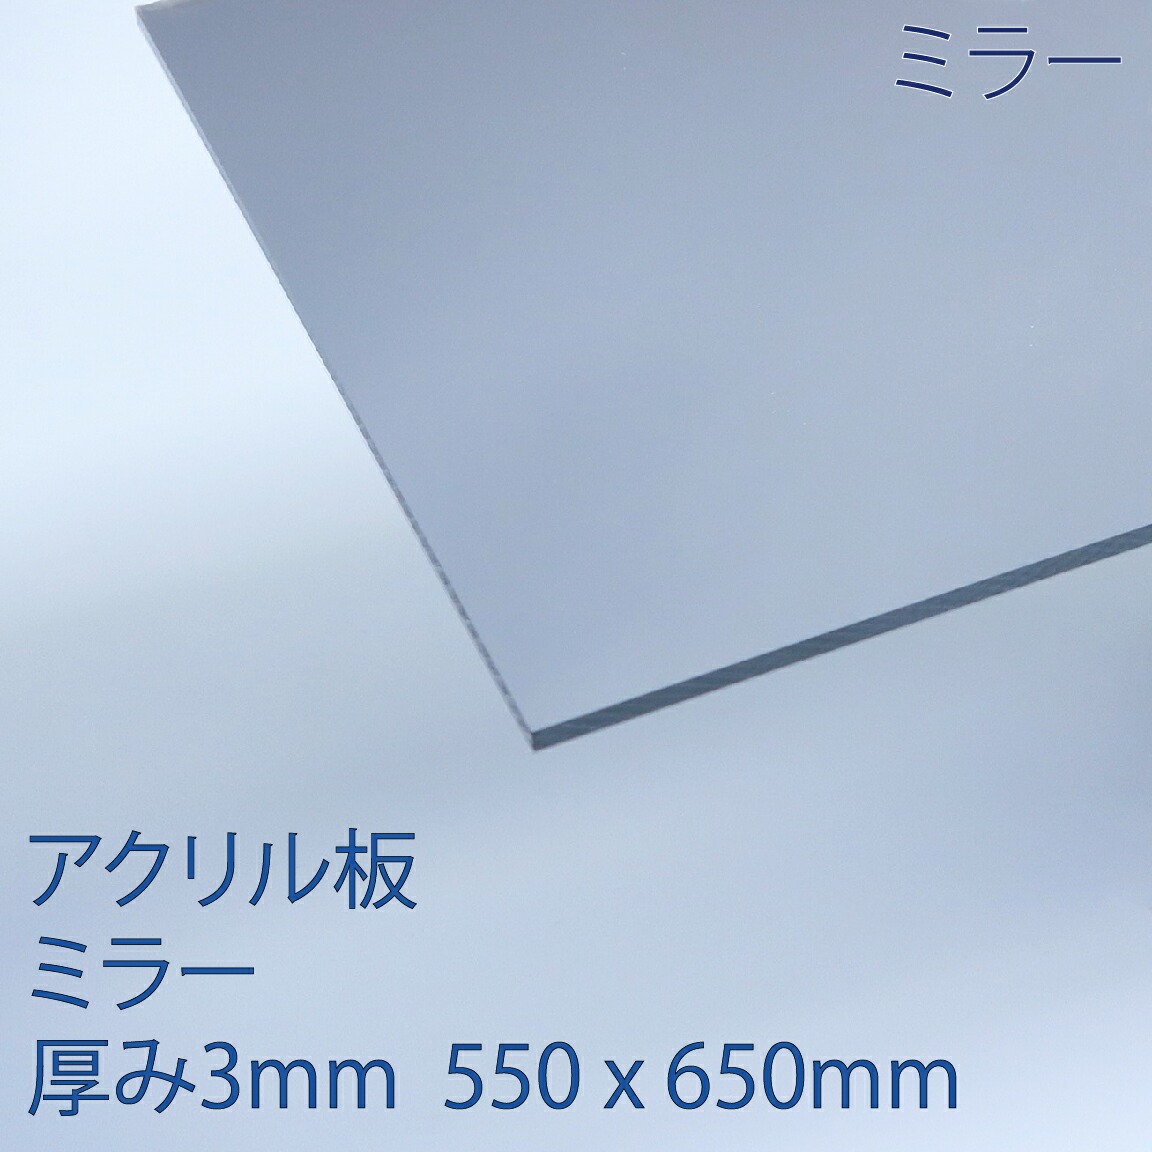 アクリル板アクリミラー アクリル鏡  厚み3mm 550x650mm  クリア プラスチック